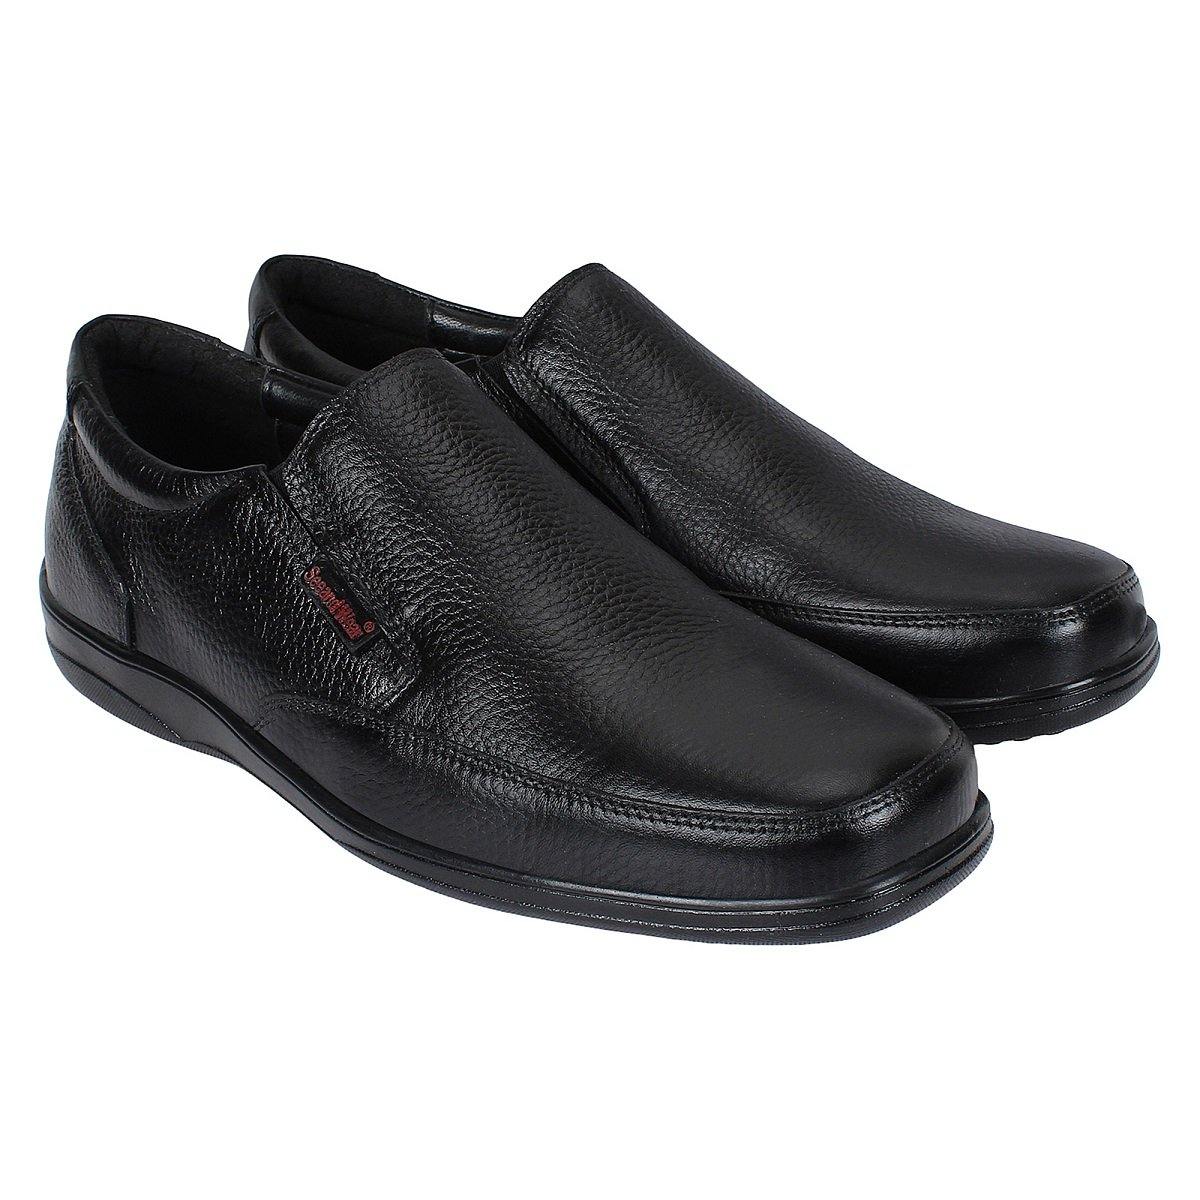 SeeandWear Formal Shoes for Men - SeeandWear